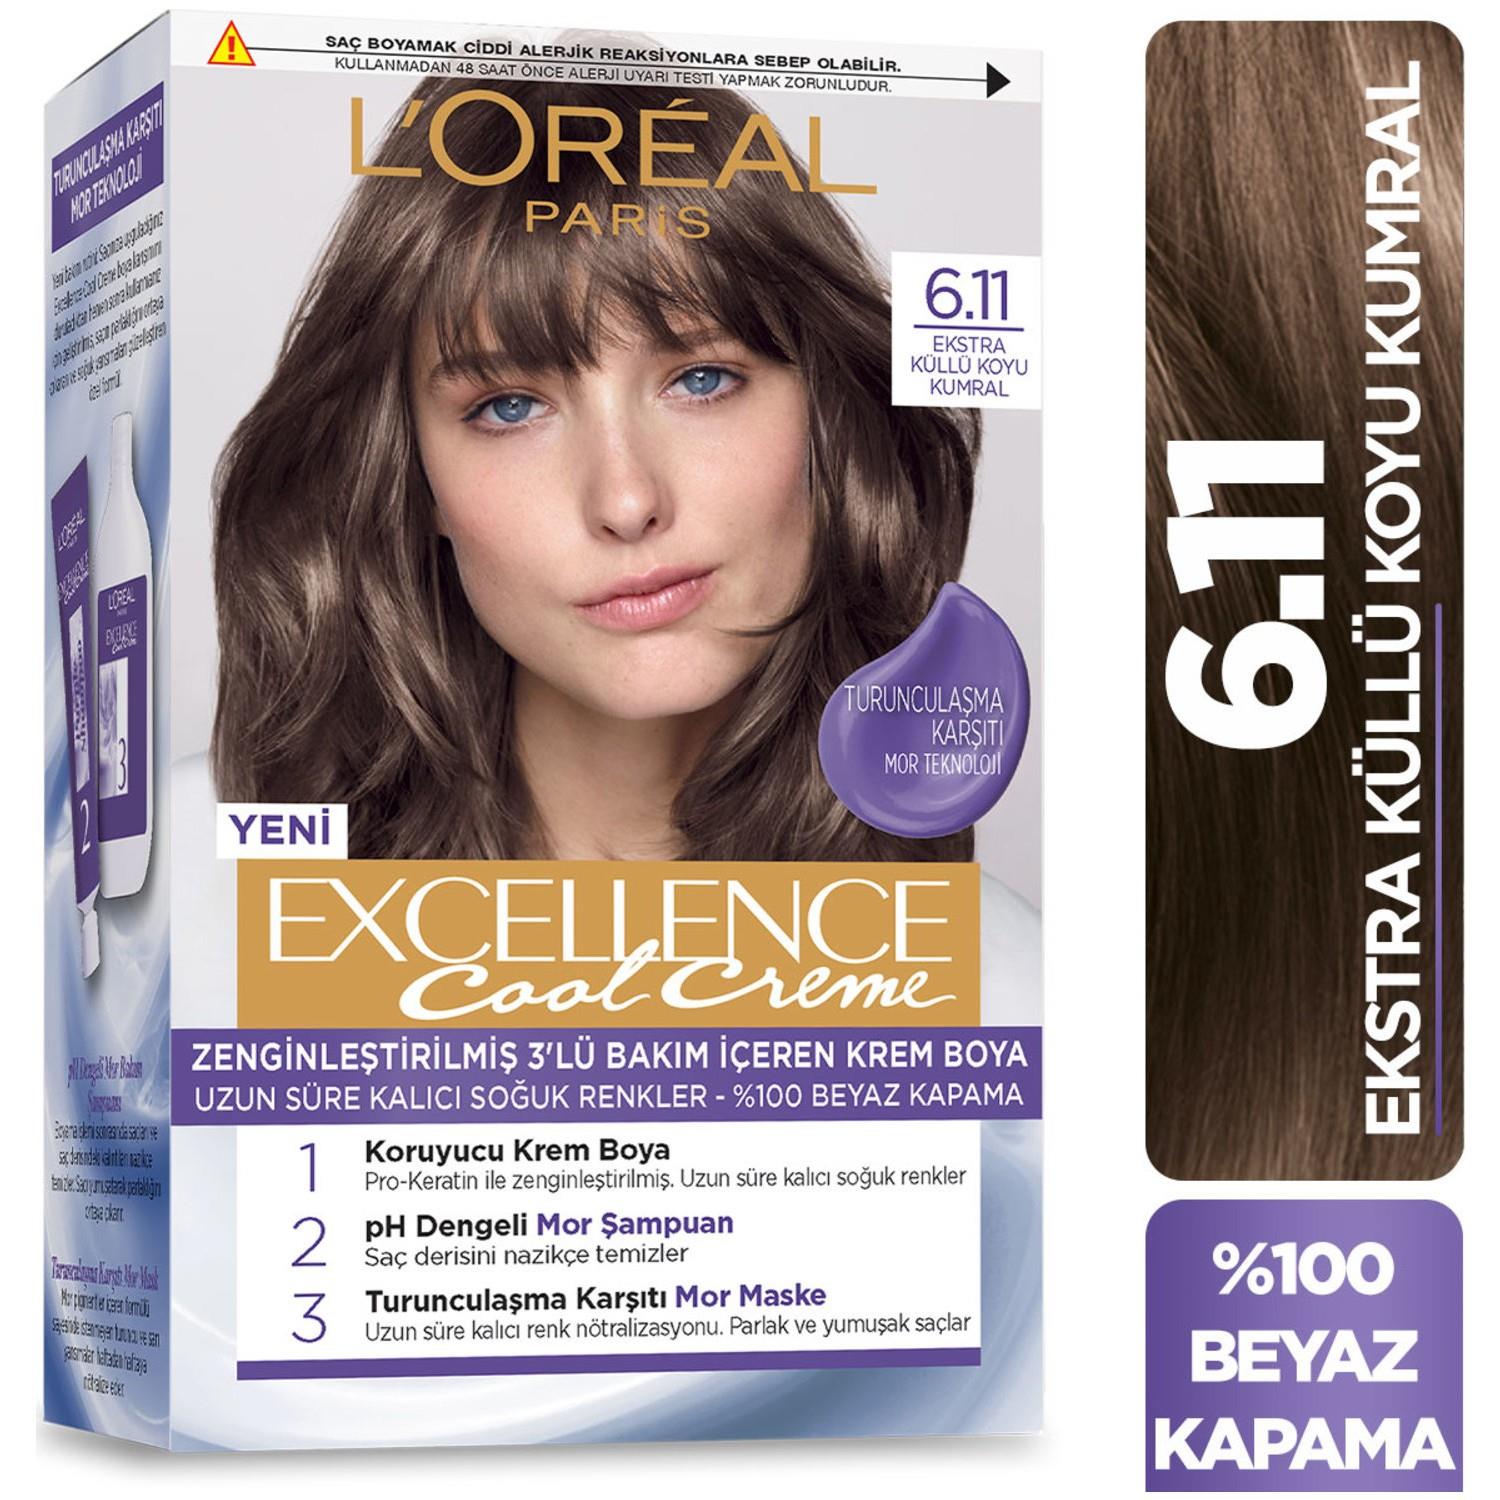 L'Oréal Paris Excellence Cool Creme Saç Boyası - 6.11 Ekstra Küllü Koyu  Kumral - Onur Market